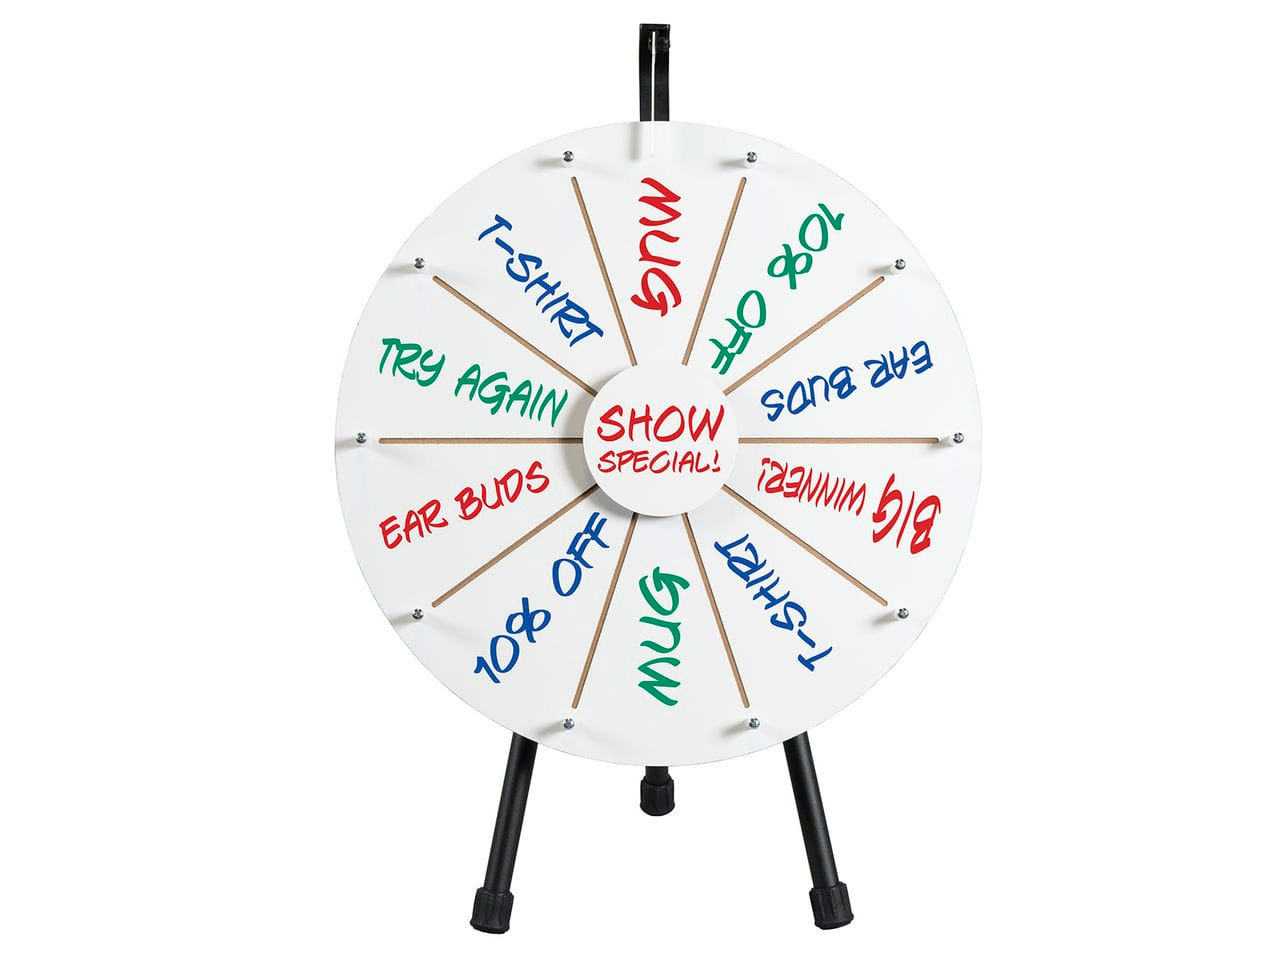 Magnetic Dry Erase Spinner Wheel - 1 magnetic spinner wheel